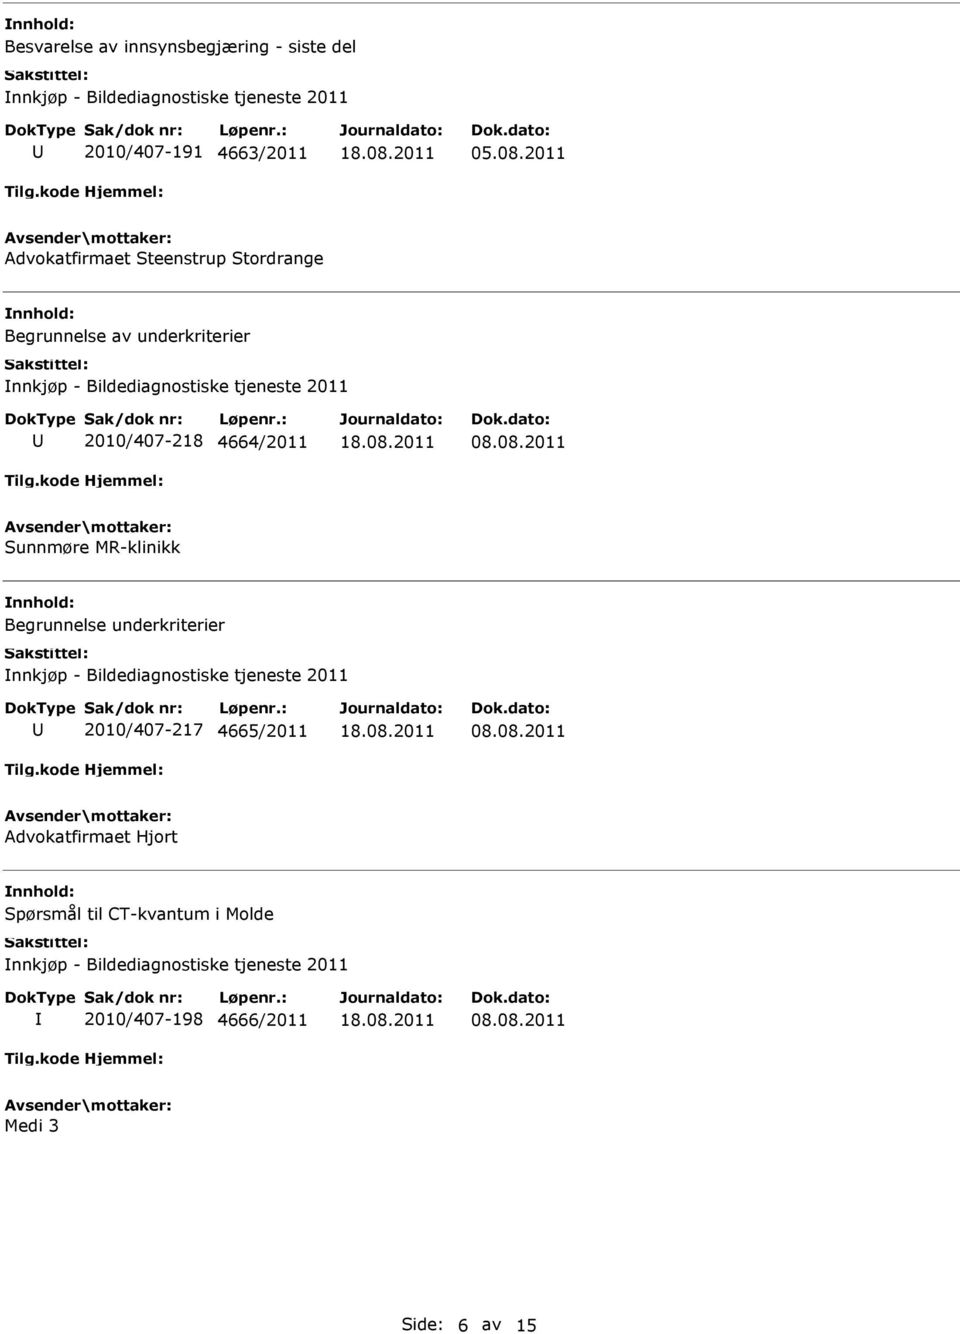 4664/2011 08.08.2011 Sunnmøre MR-klinikk Begrunnelse underkriterier nnkjøp - Bildediagnostiske tjeneste 2011 2010/407-217 4665/2011 08.